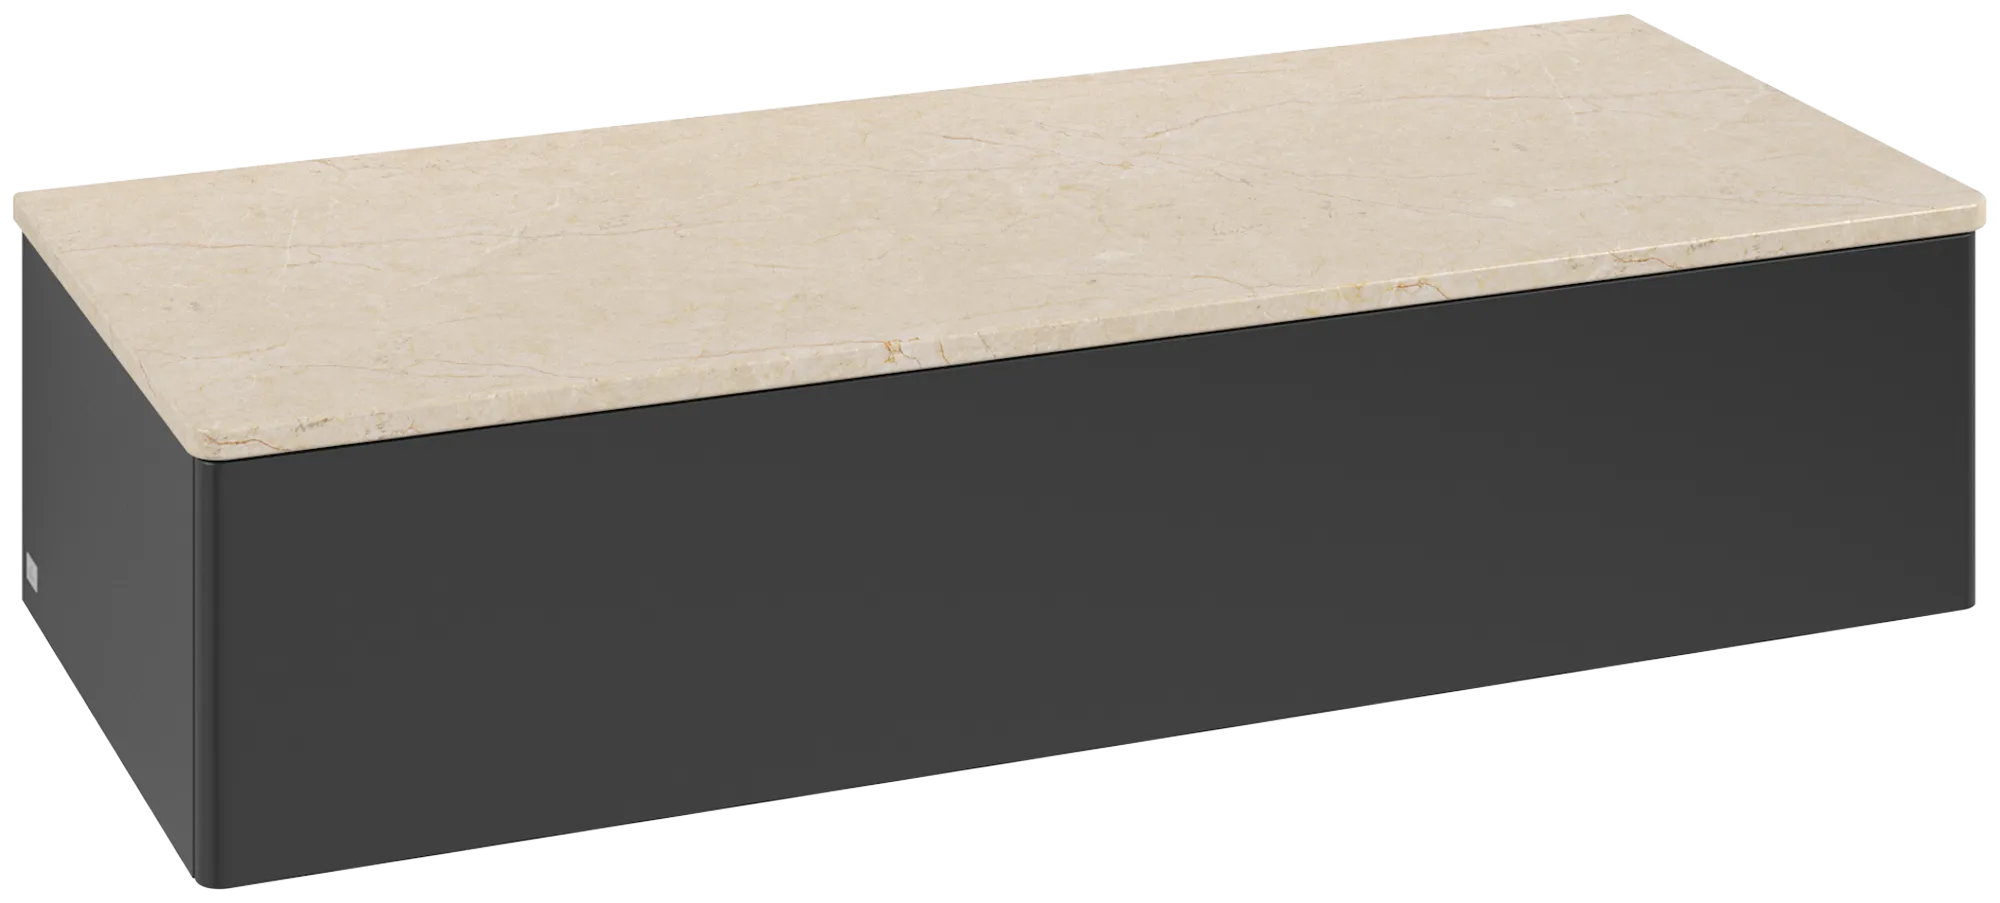 Bild von VILLEROY BOCH Antao Sideboard, mit Beleuchtung, 1 Auszug, 1200 x 268 x 500 mm, Front ohne Struktur, Black Matt Lacquer / Botticino #L41003PD